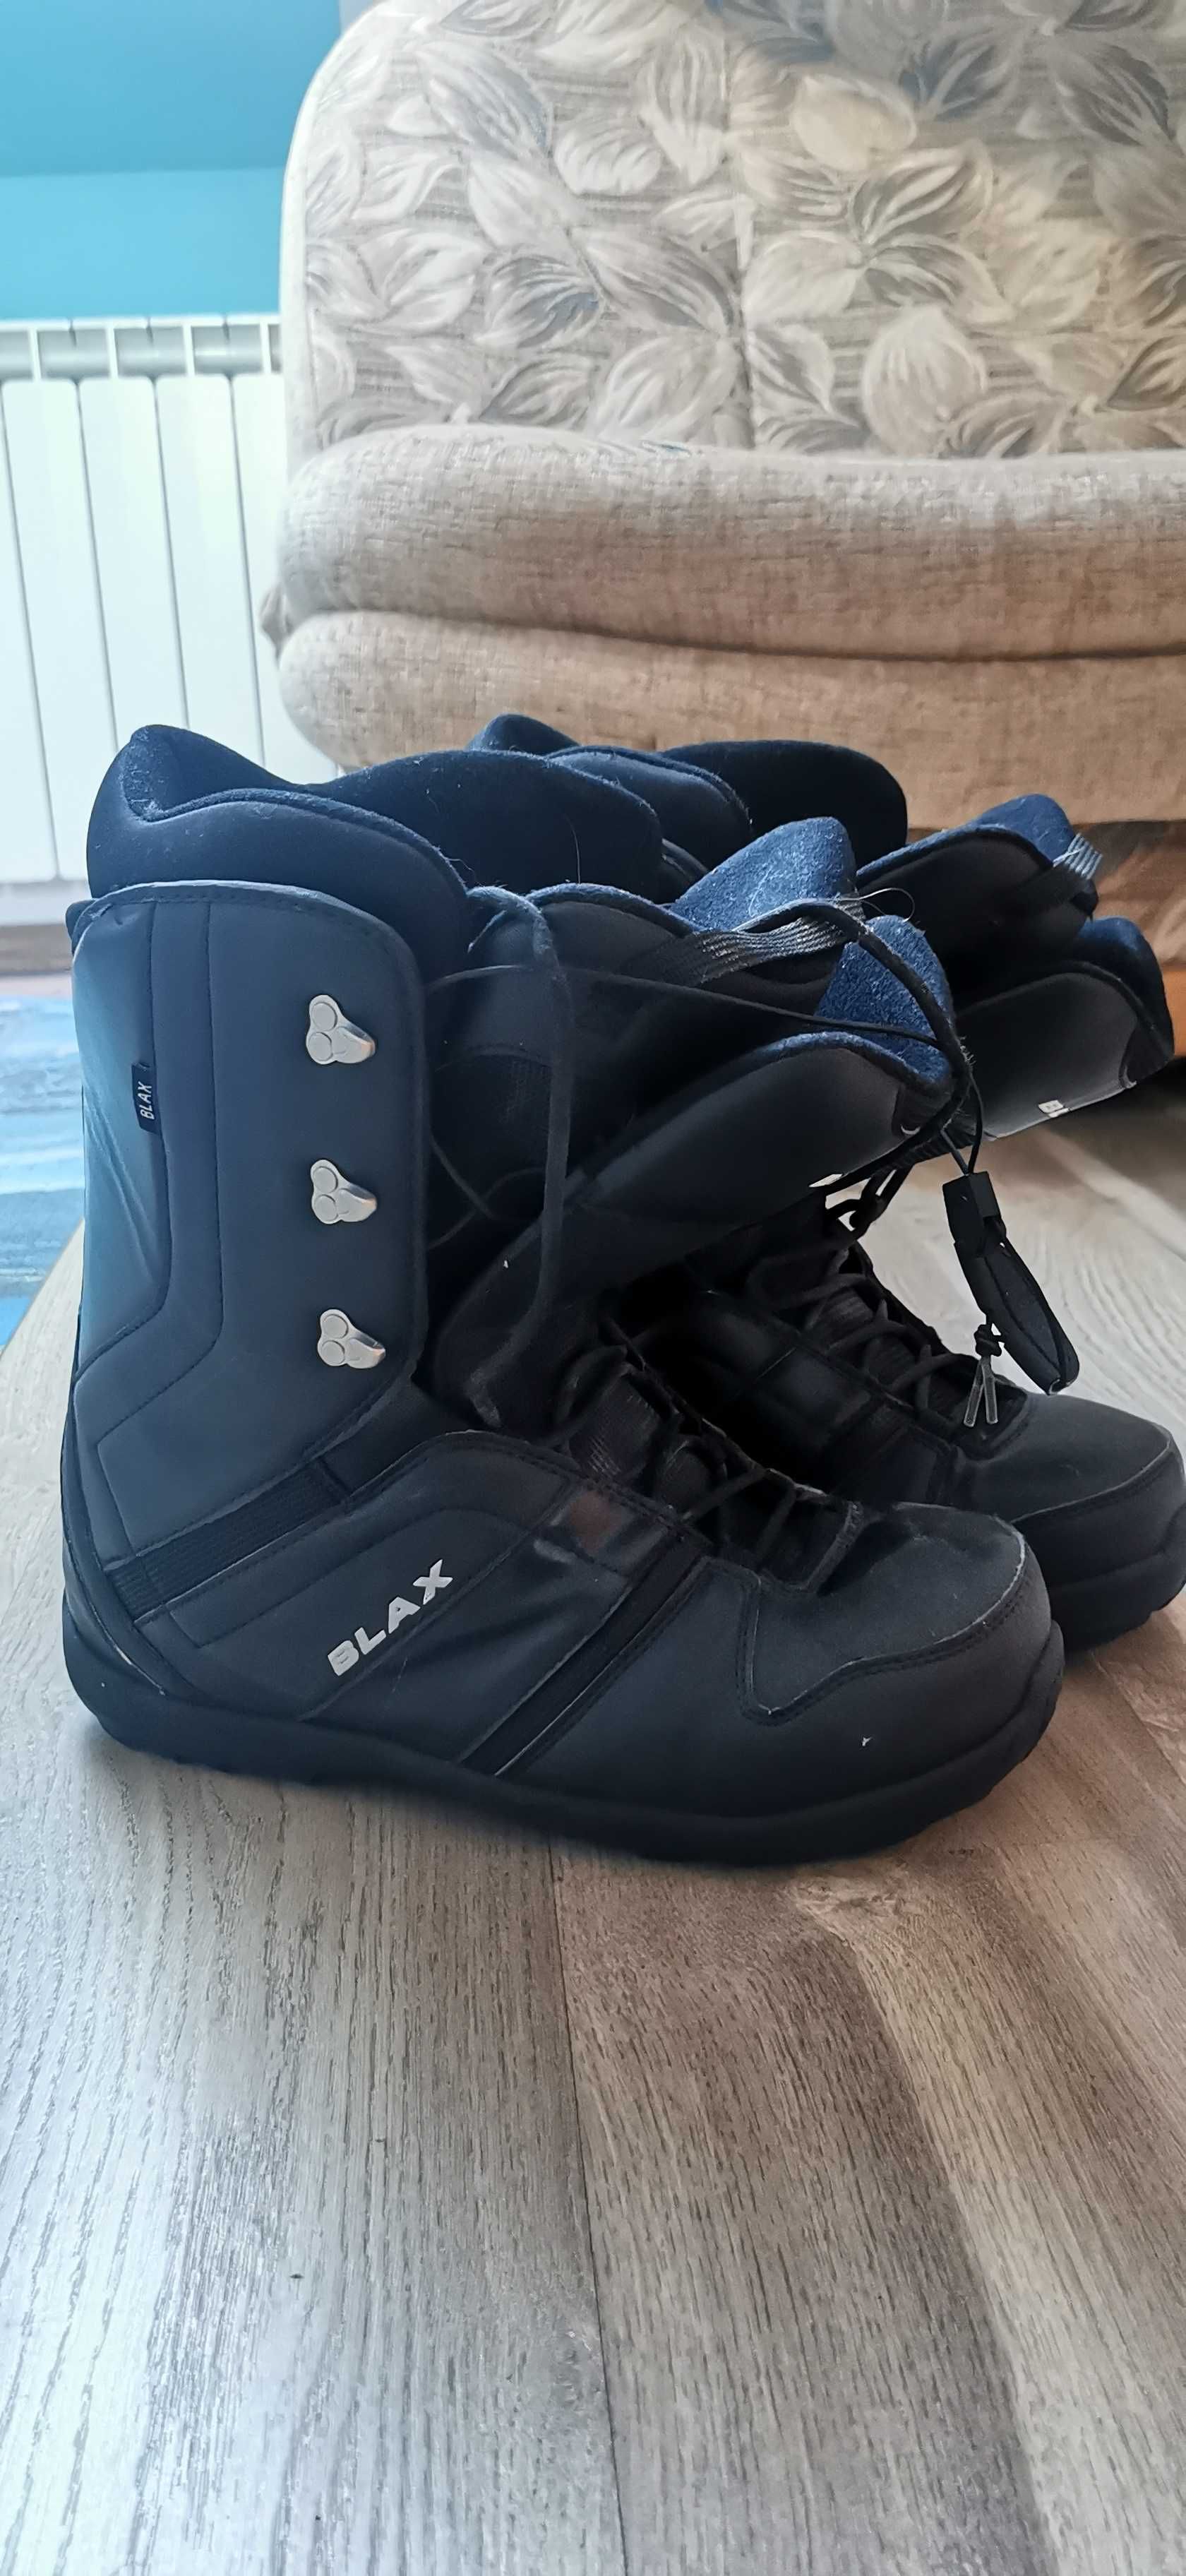 Buty snowboardowe BLAX + gogle UVEX rozmiar 46,5